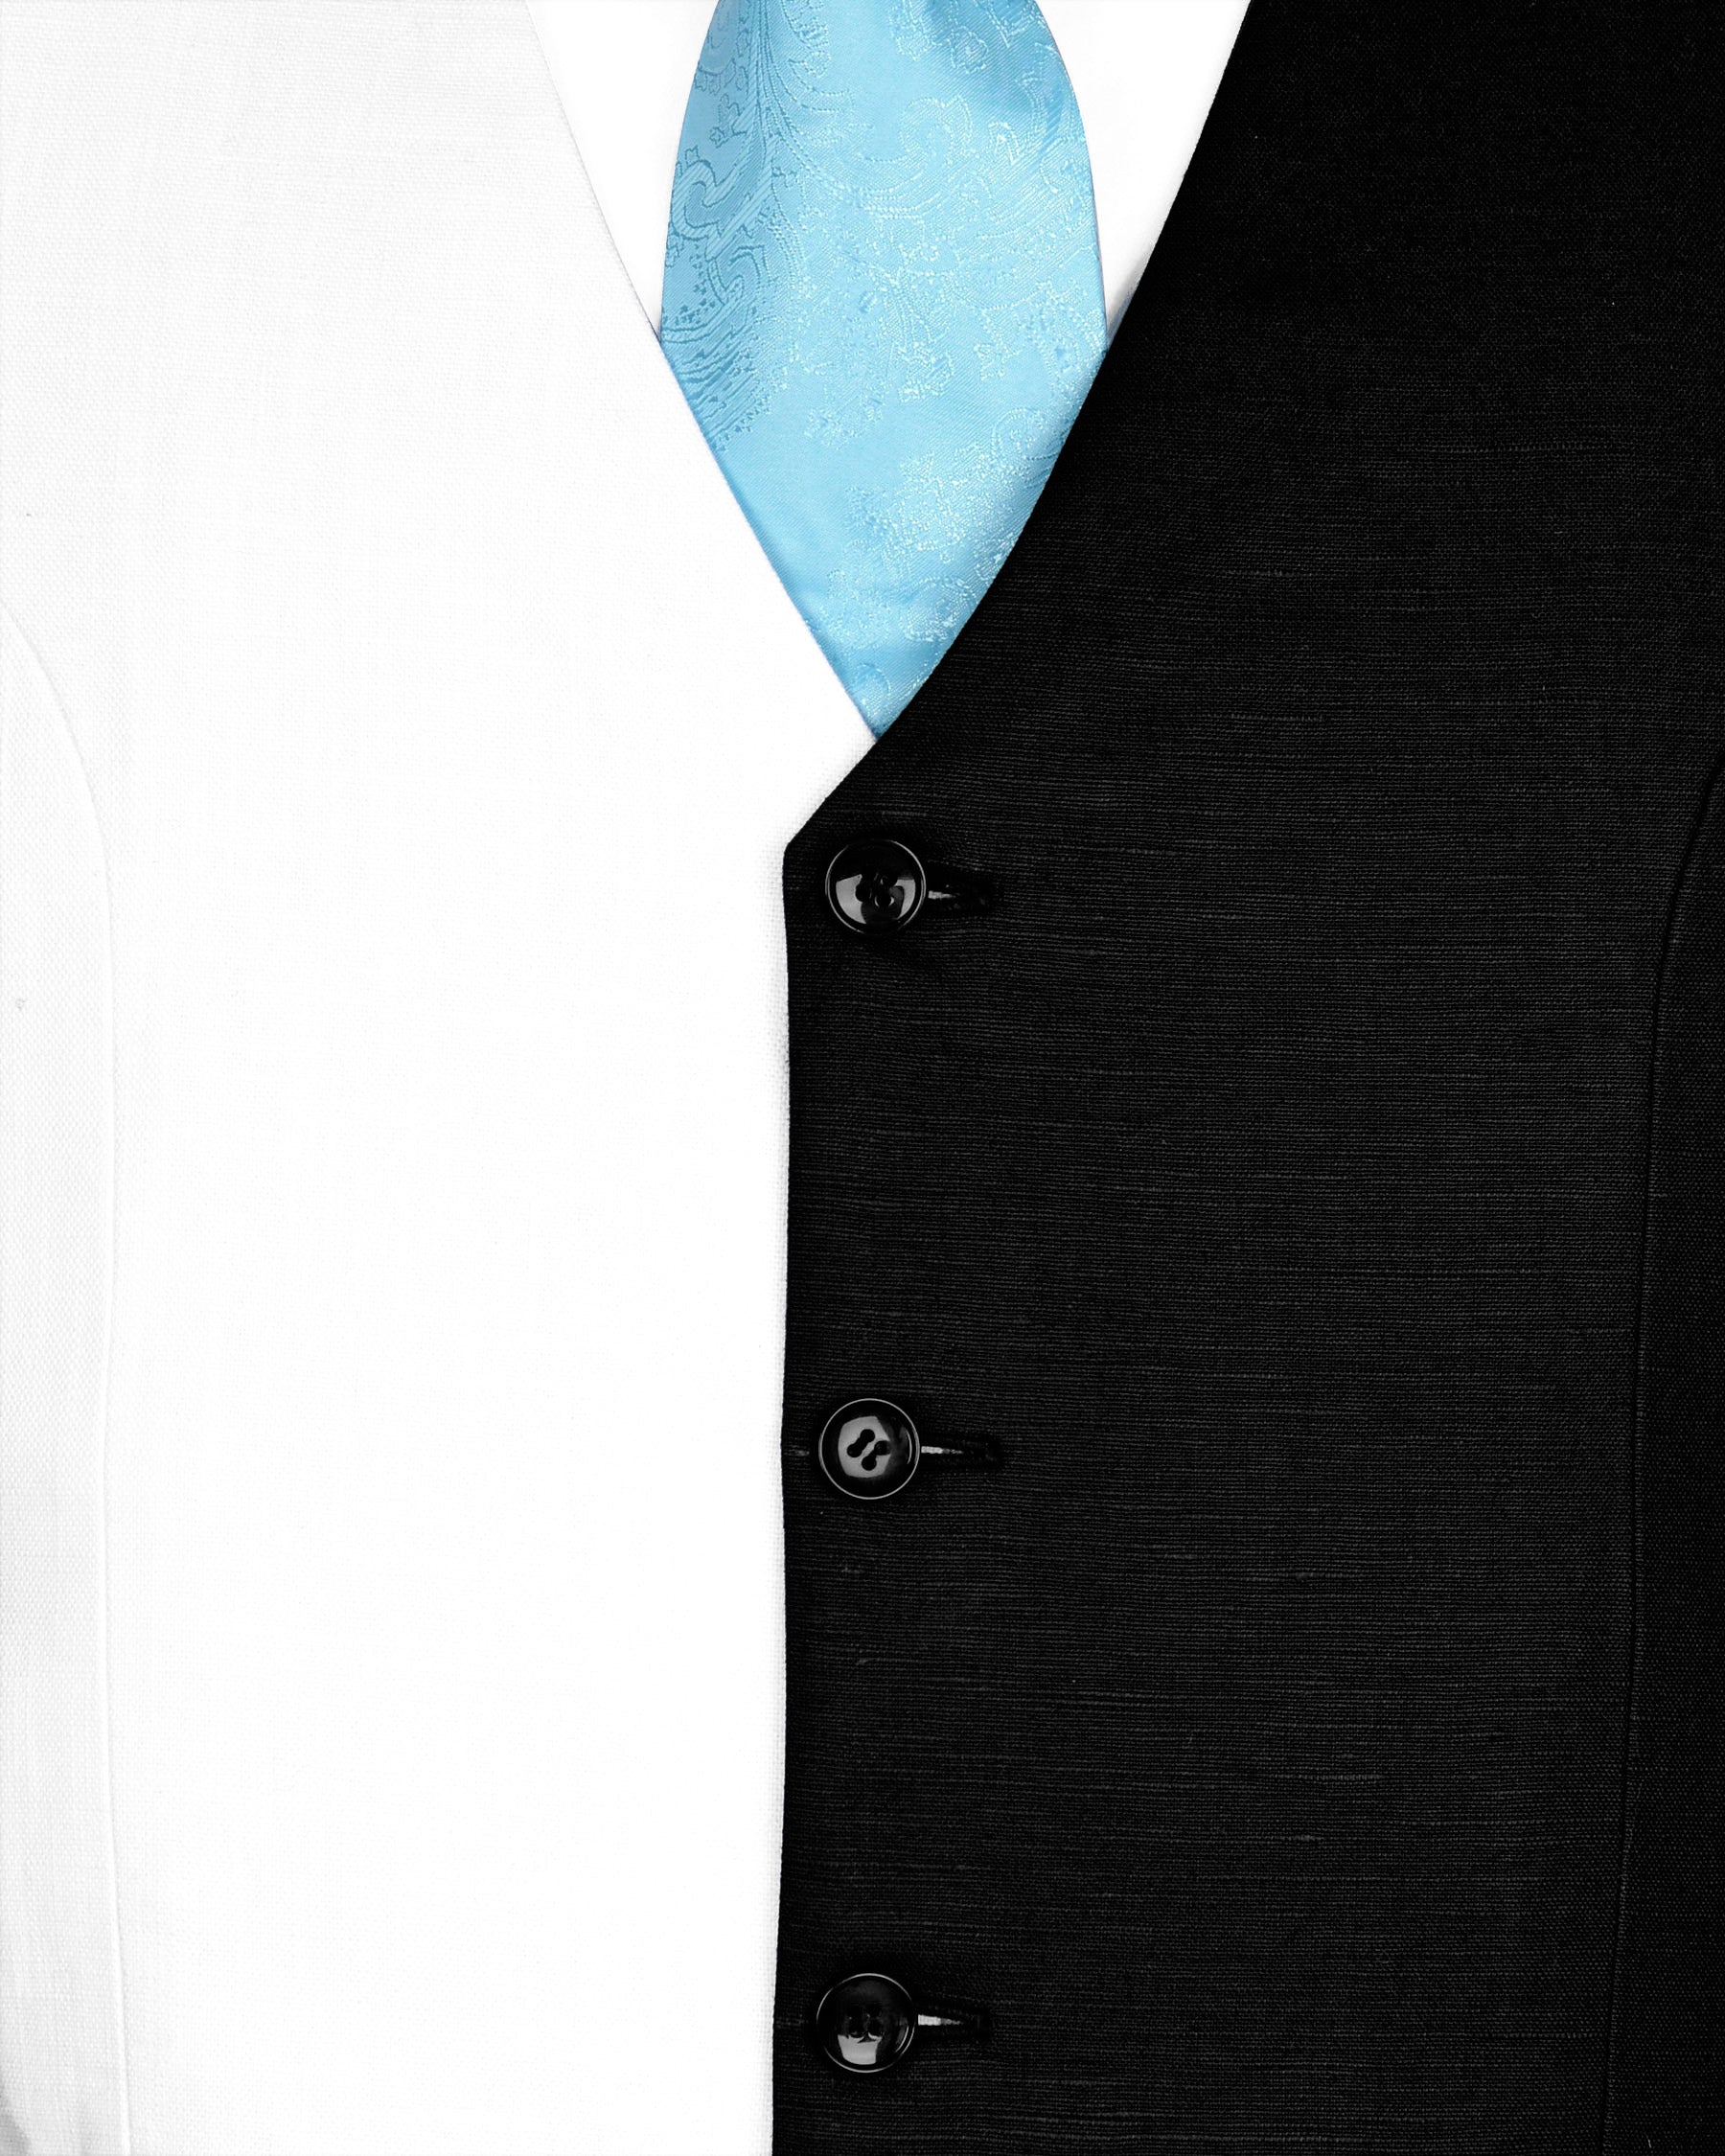 Black & White Luxurious Linen Suit